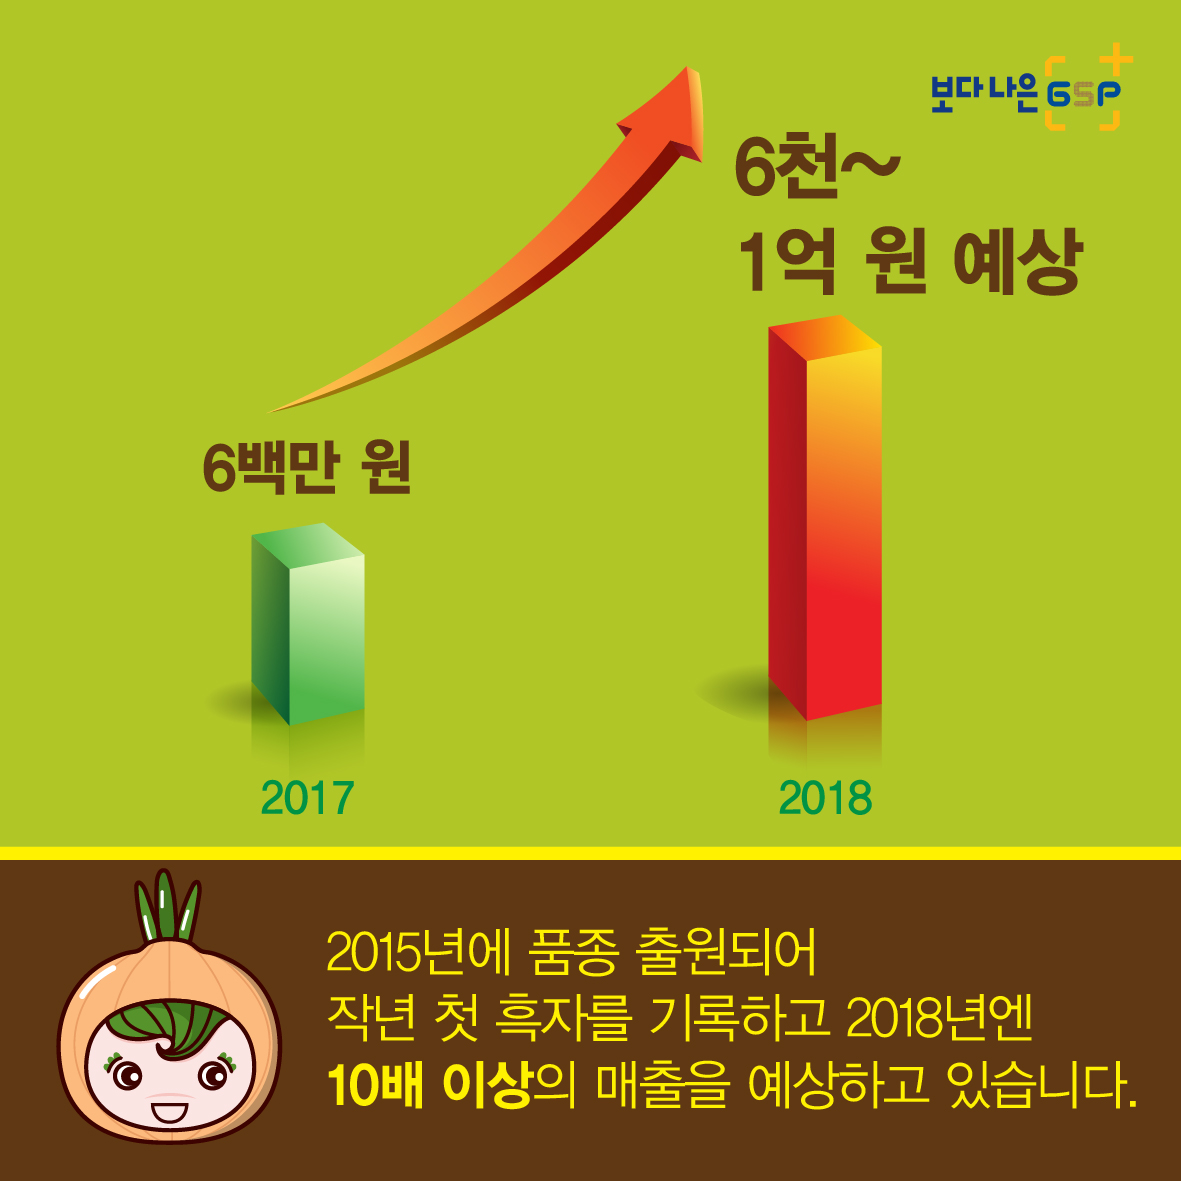 친절한 종자씨와 함께하는 GSP 품종뉴스 - 양파편 카드뉴스_양파편05-07.jpg